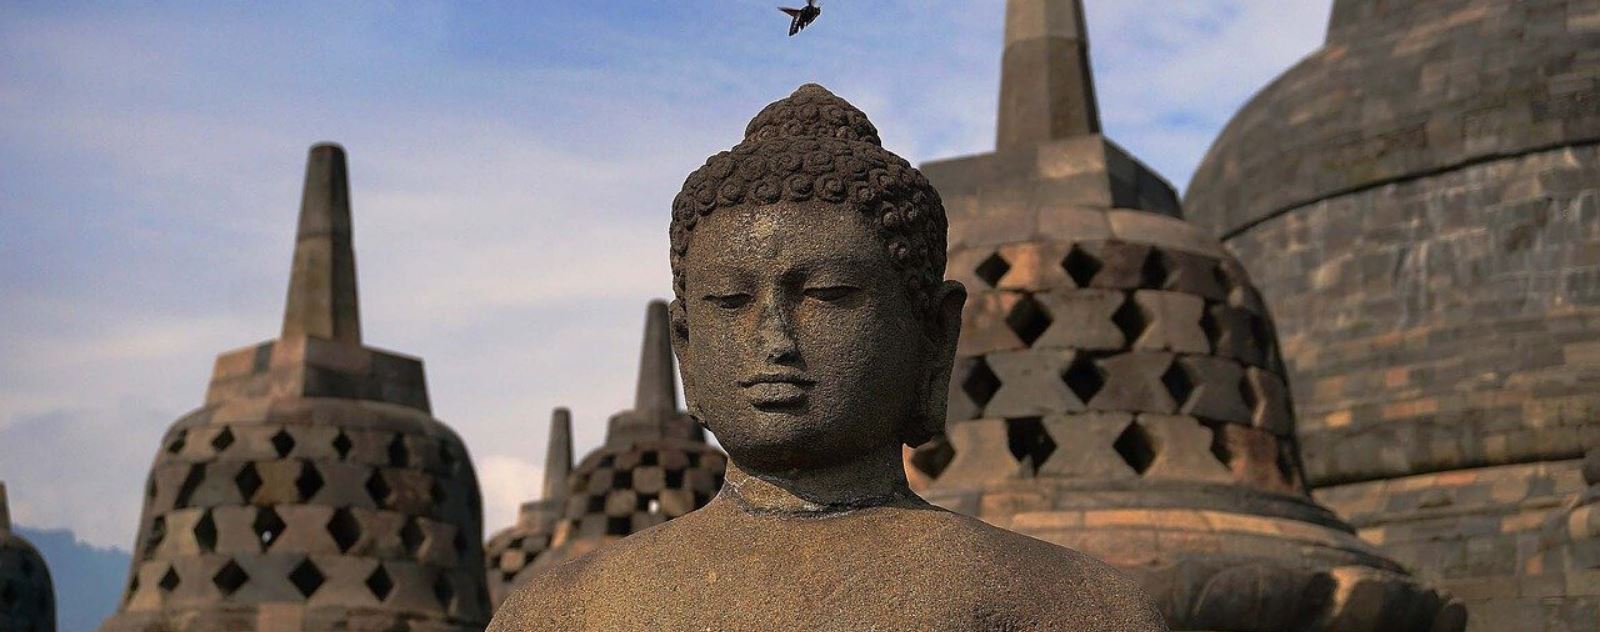 Borobudur : un site incontournable pour les amoureux du bouddhisme